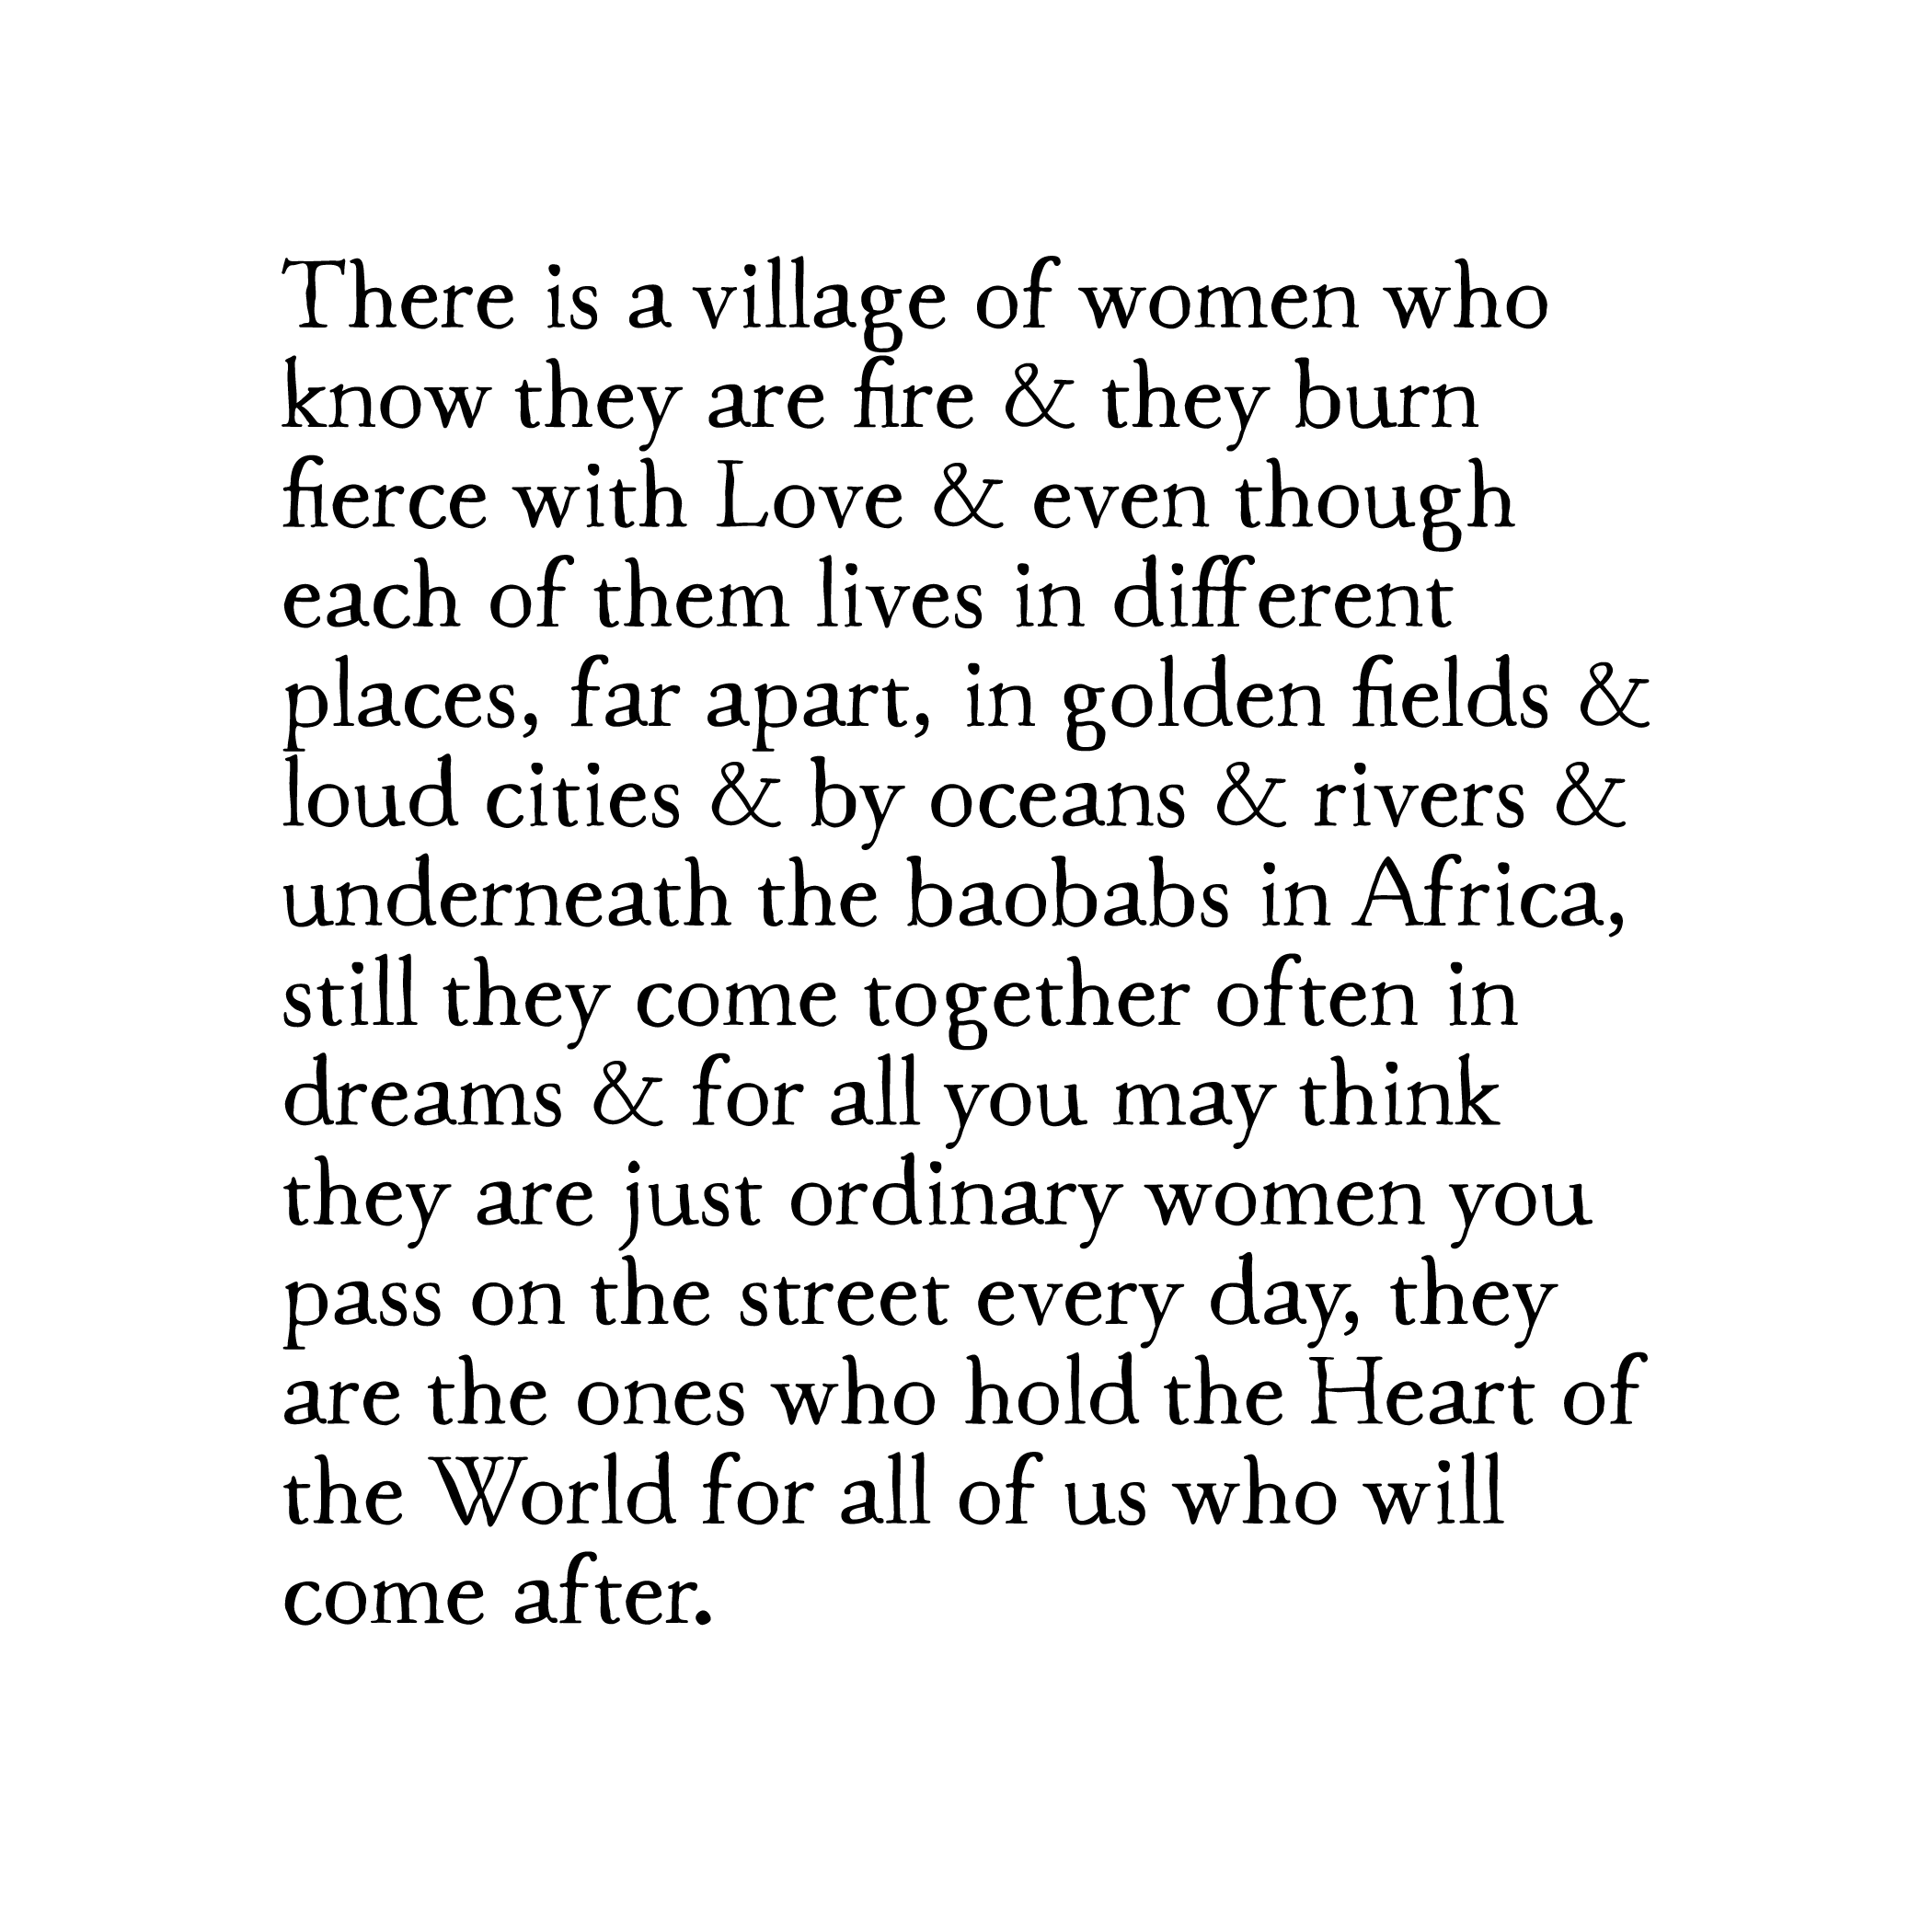 story keeper: village of women